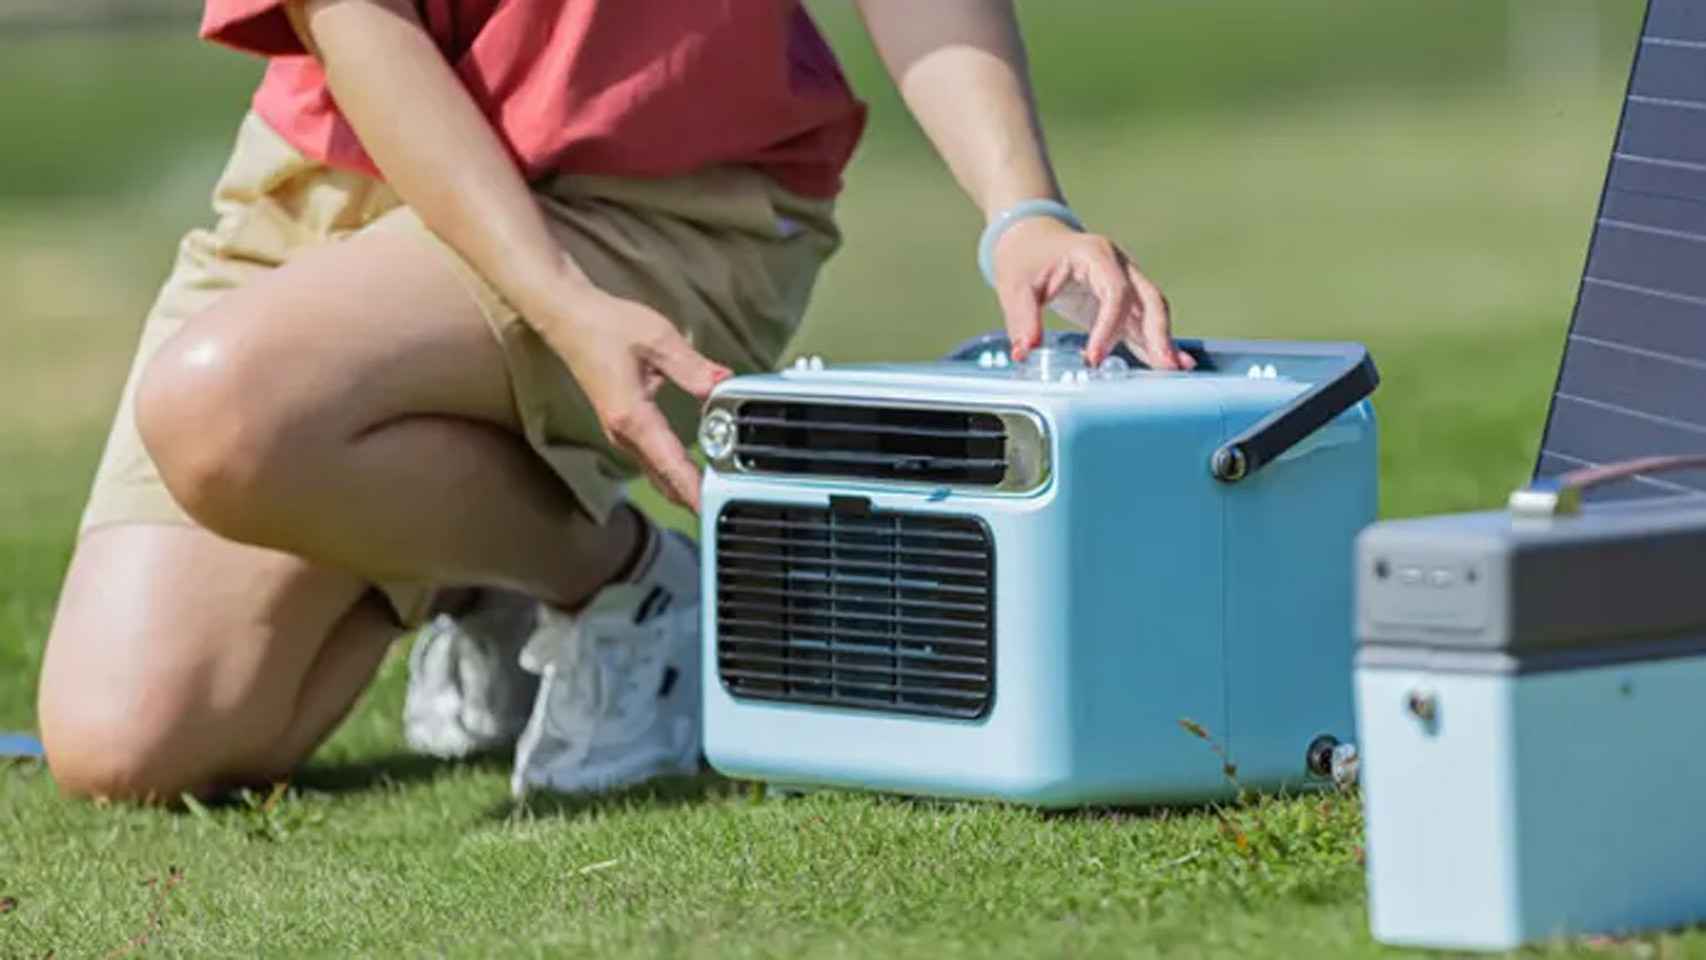 El aire acondicionado portátil para llevar donde quieras: enfría en minutos  y no necesita instalación